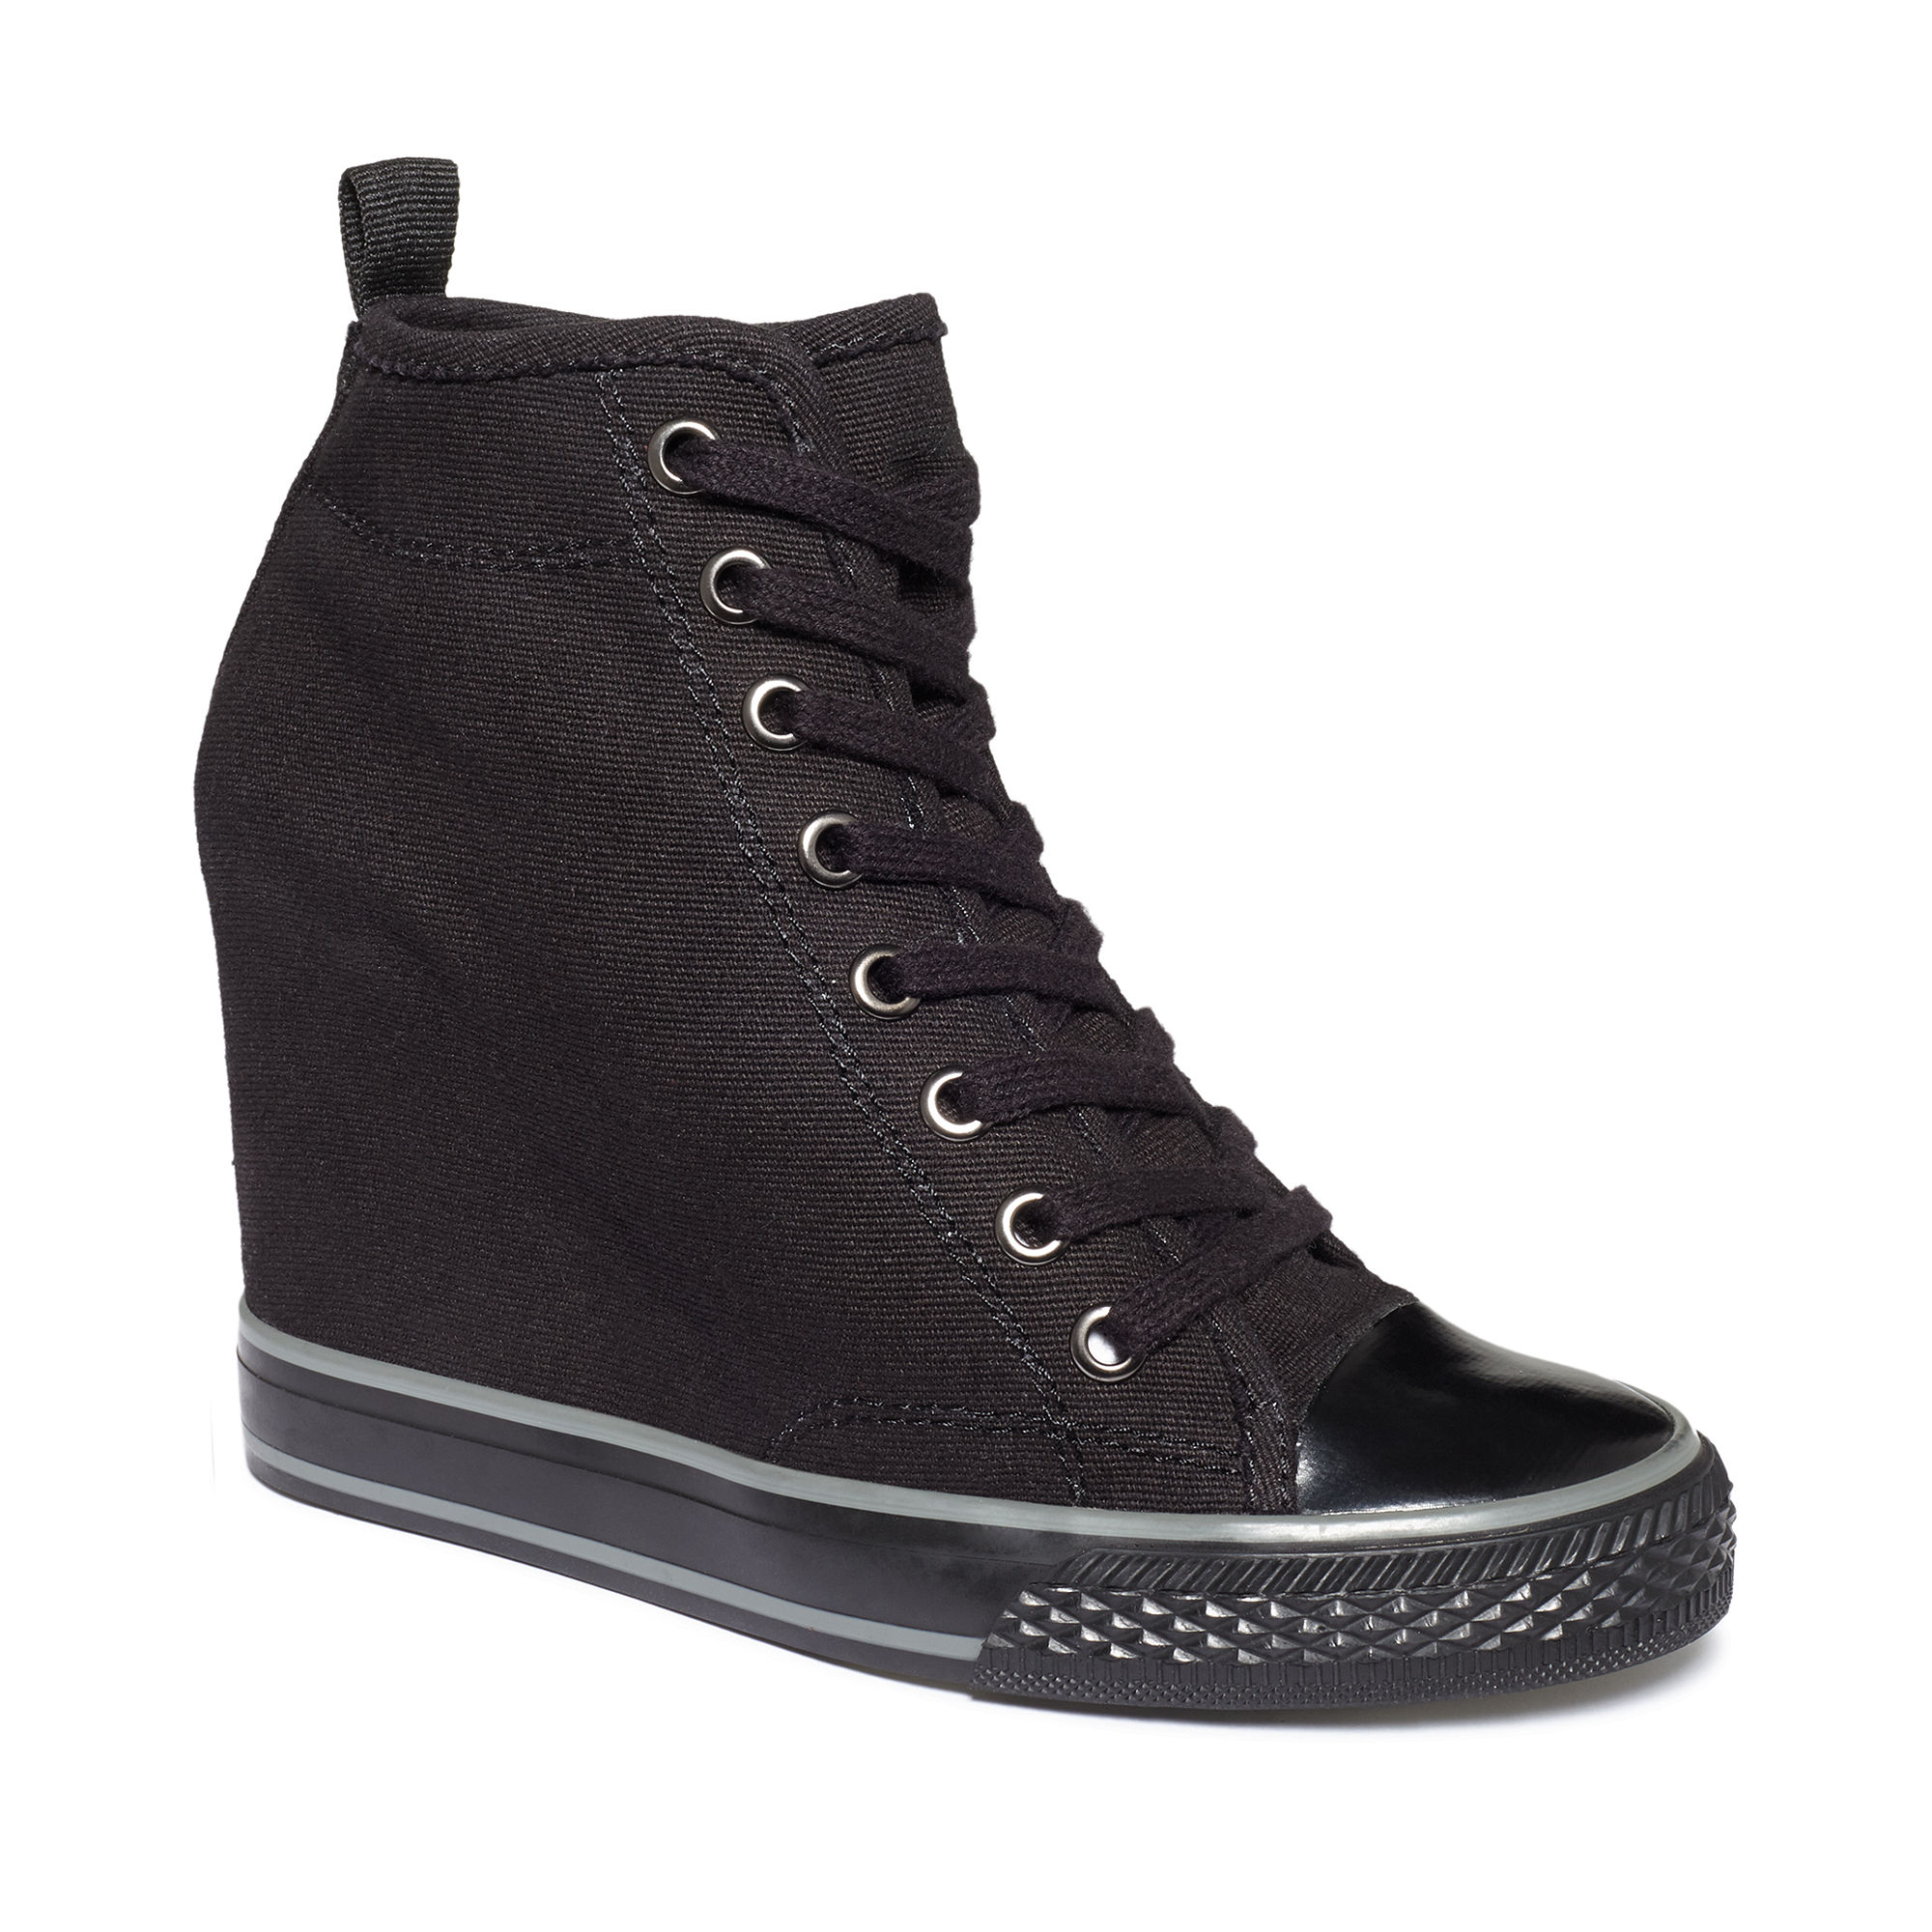 Dkny Grommet Wedge Sneakers in Black (Black Canvas) | Lyst